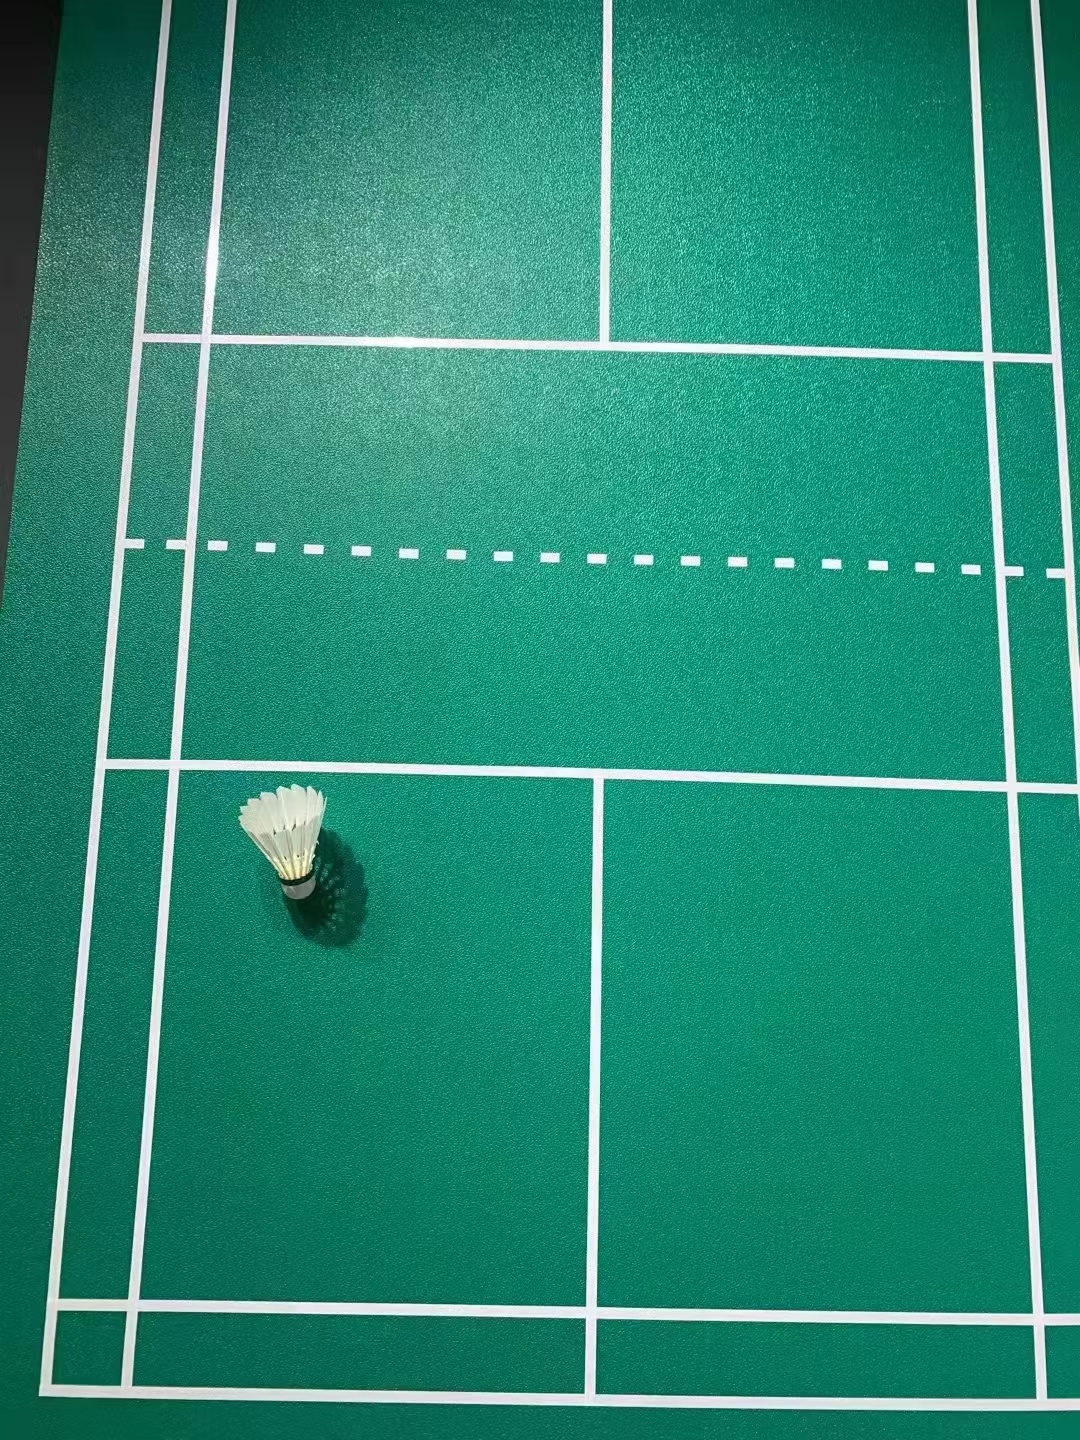 昆明专业室内篮球场运动地胶，商用耐磨羽毛球乒乓球场pvc塑胶地板地垫，运动地板，曼纳奇PVC运动地板示例图19